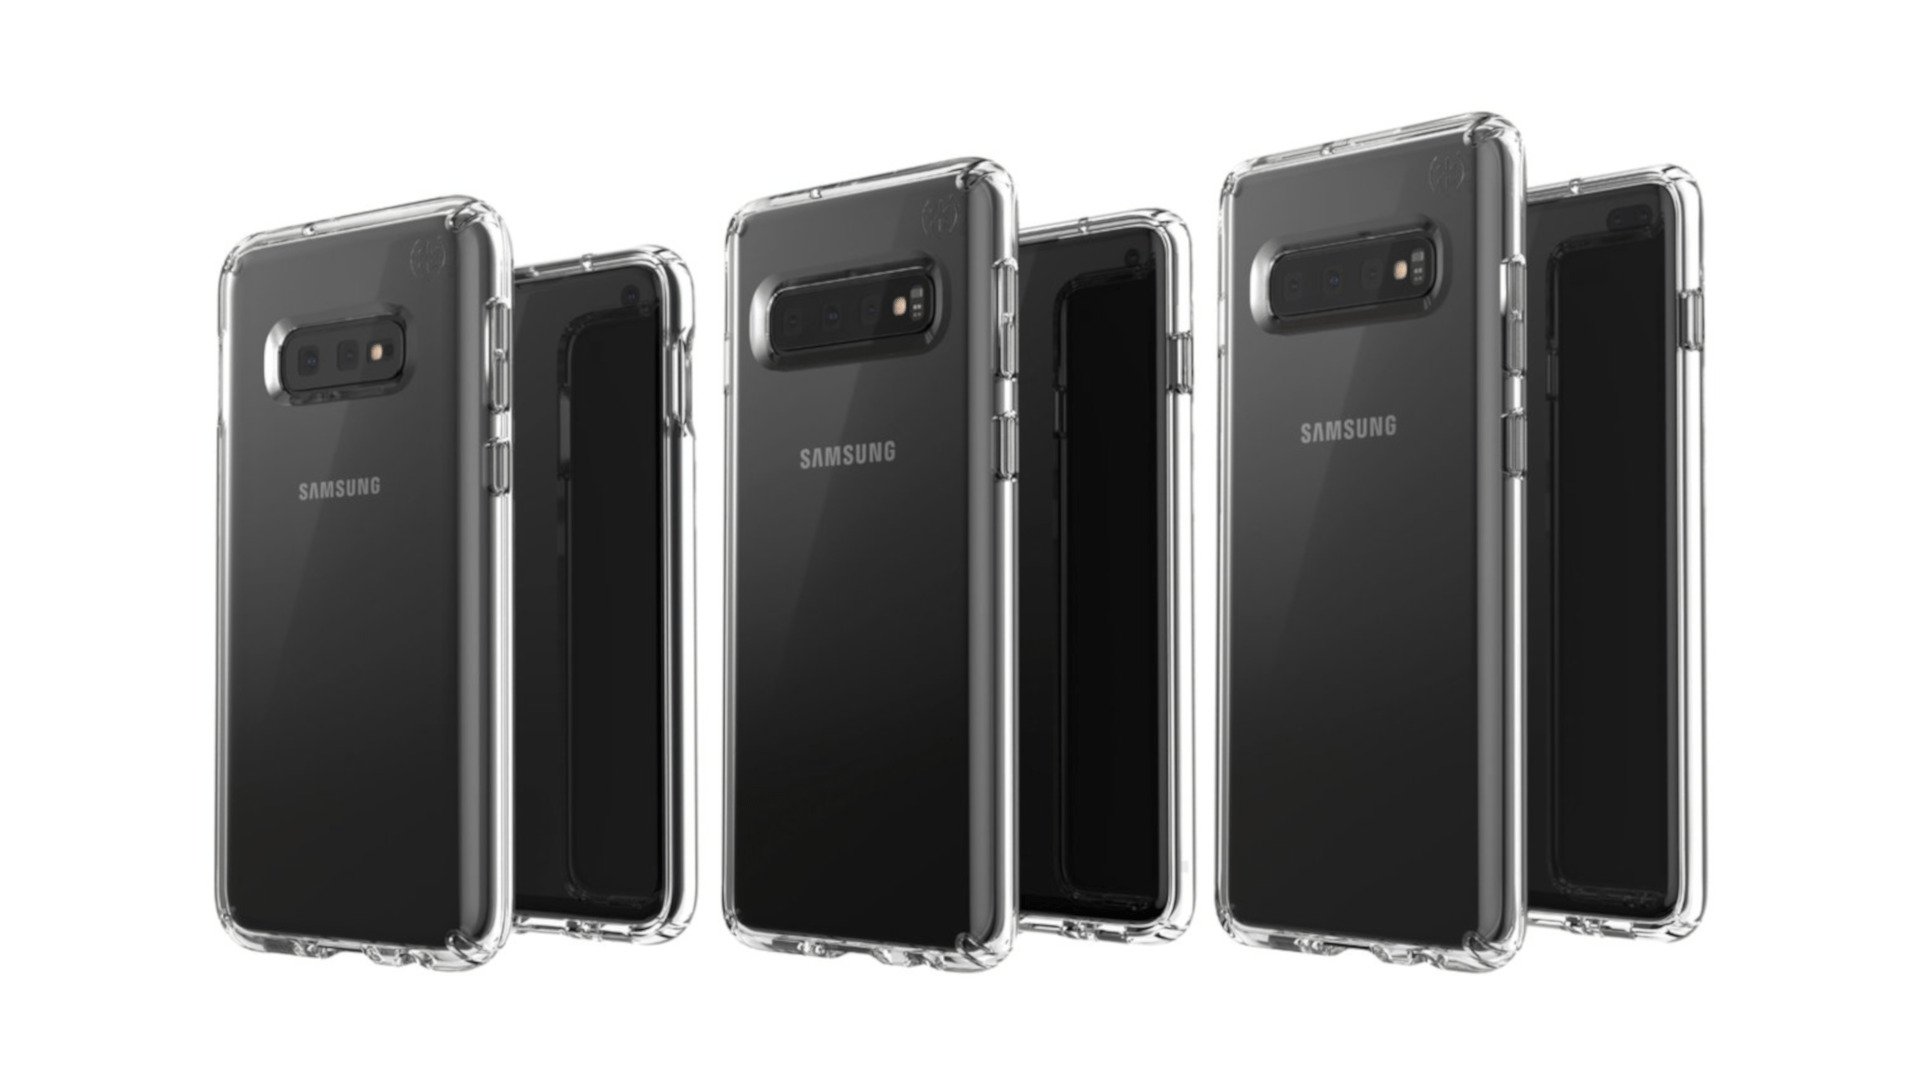 Samsung Galaxy S10 Series - Renders